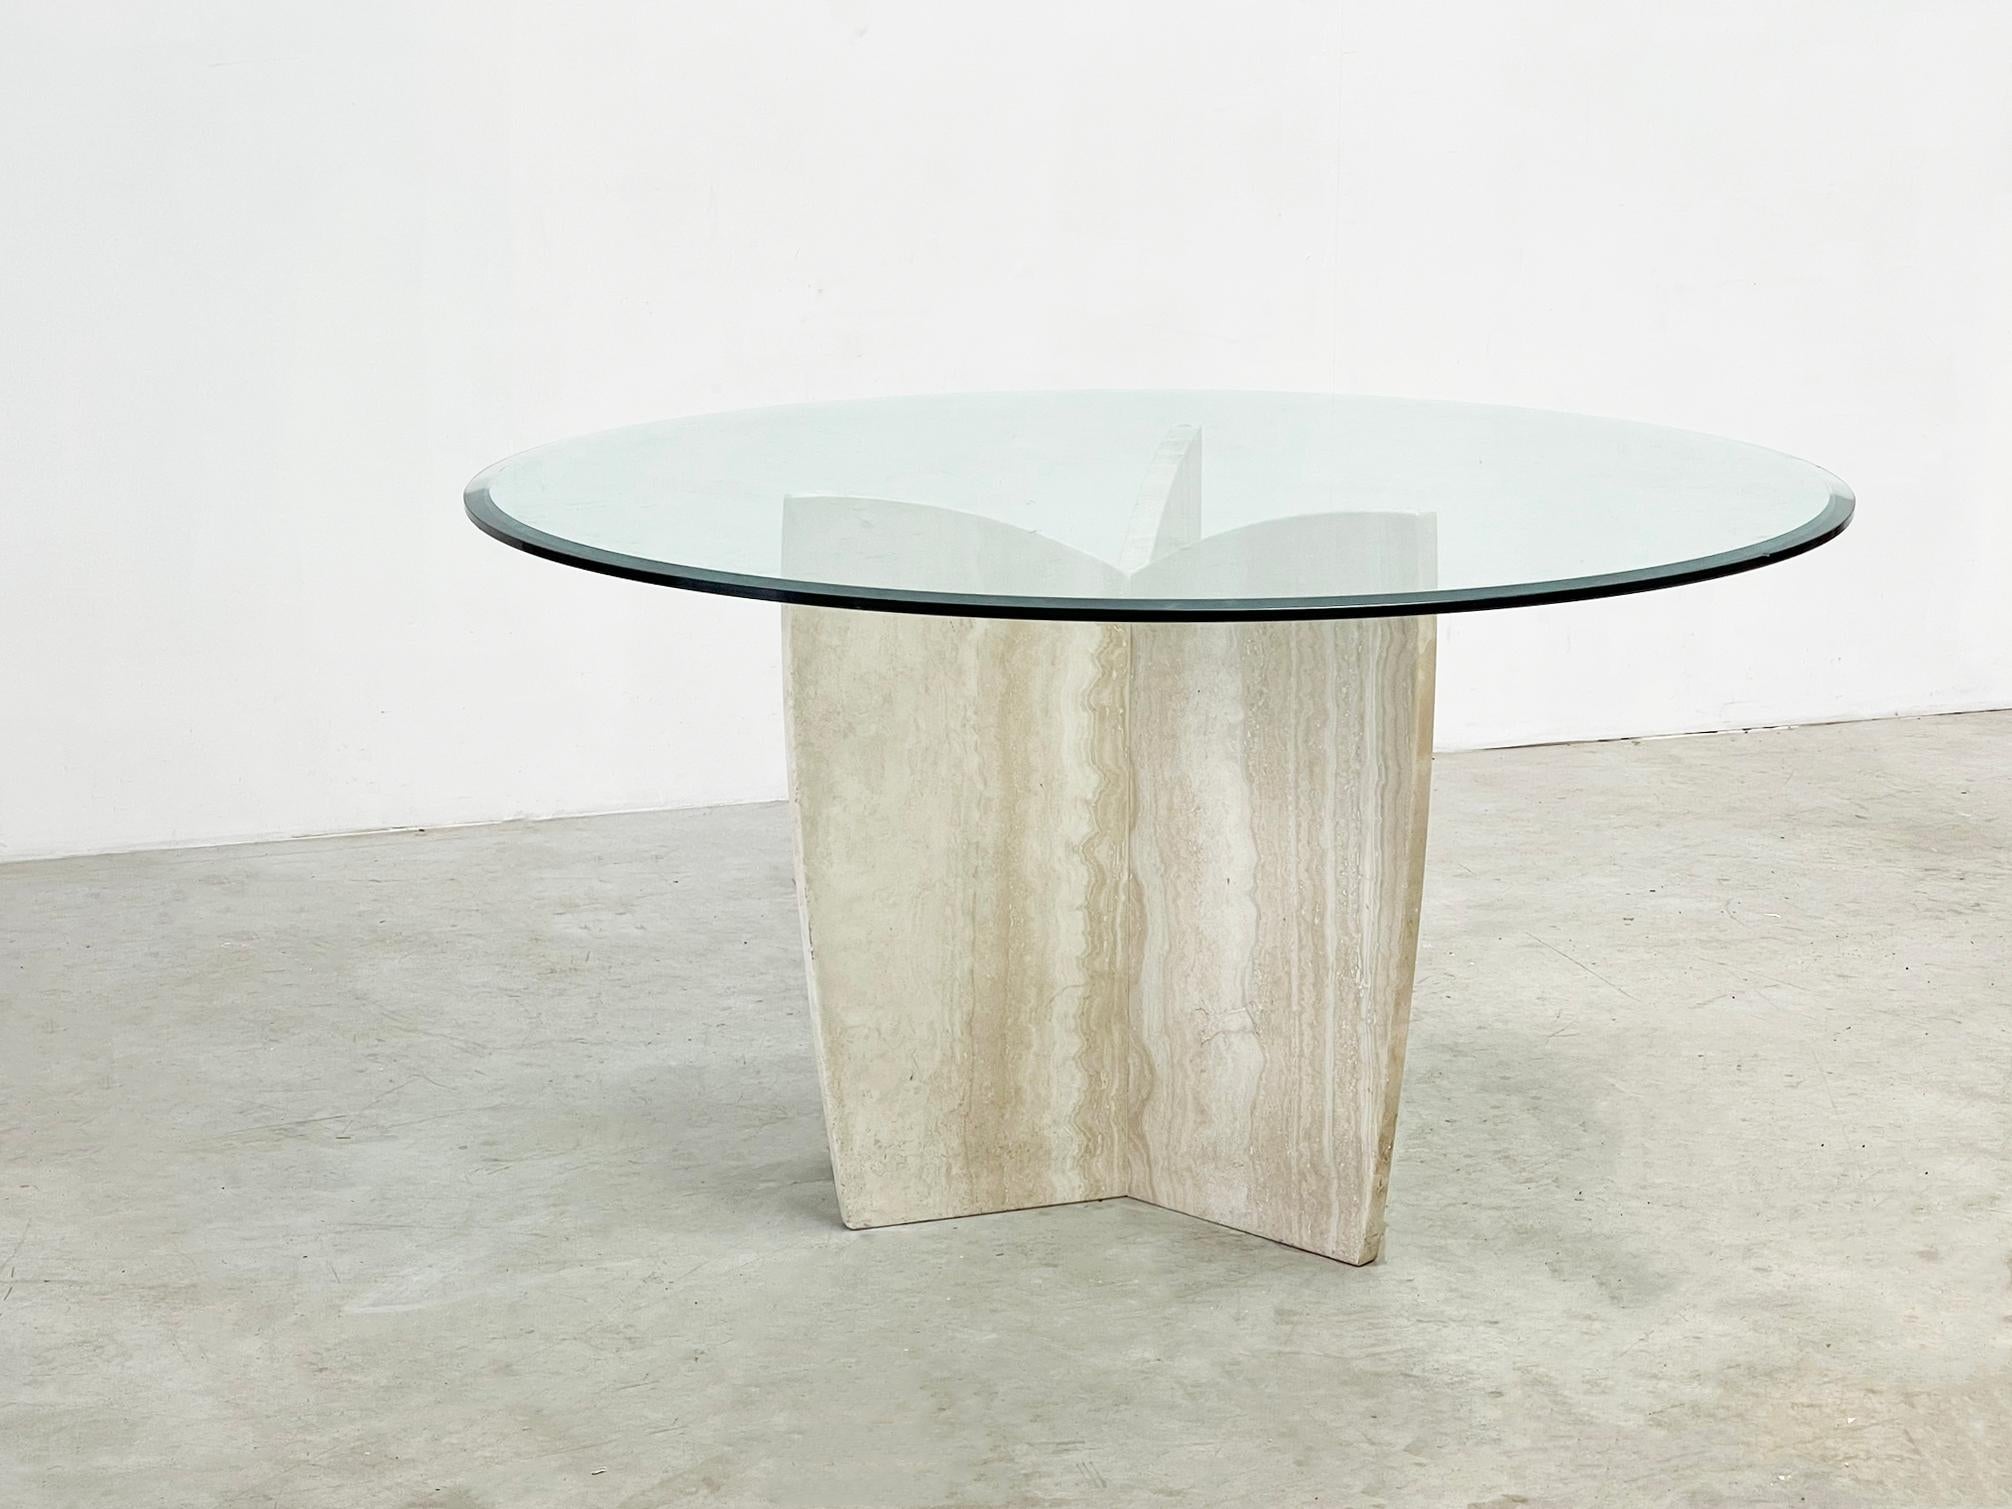  

Cette table de salle à manger en travertin, dotée d'un plateau en verre, provient probablement de  dans les années 1980 en dehors de l'Italie. Son design épuré et sa fabrication italienne en font une pièce maîtresse intemporelle pour tout espace